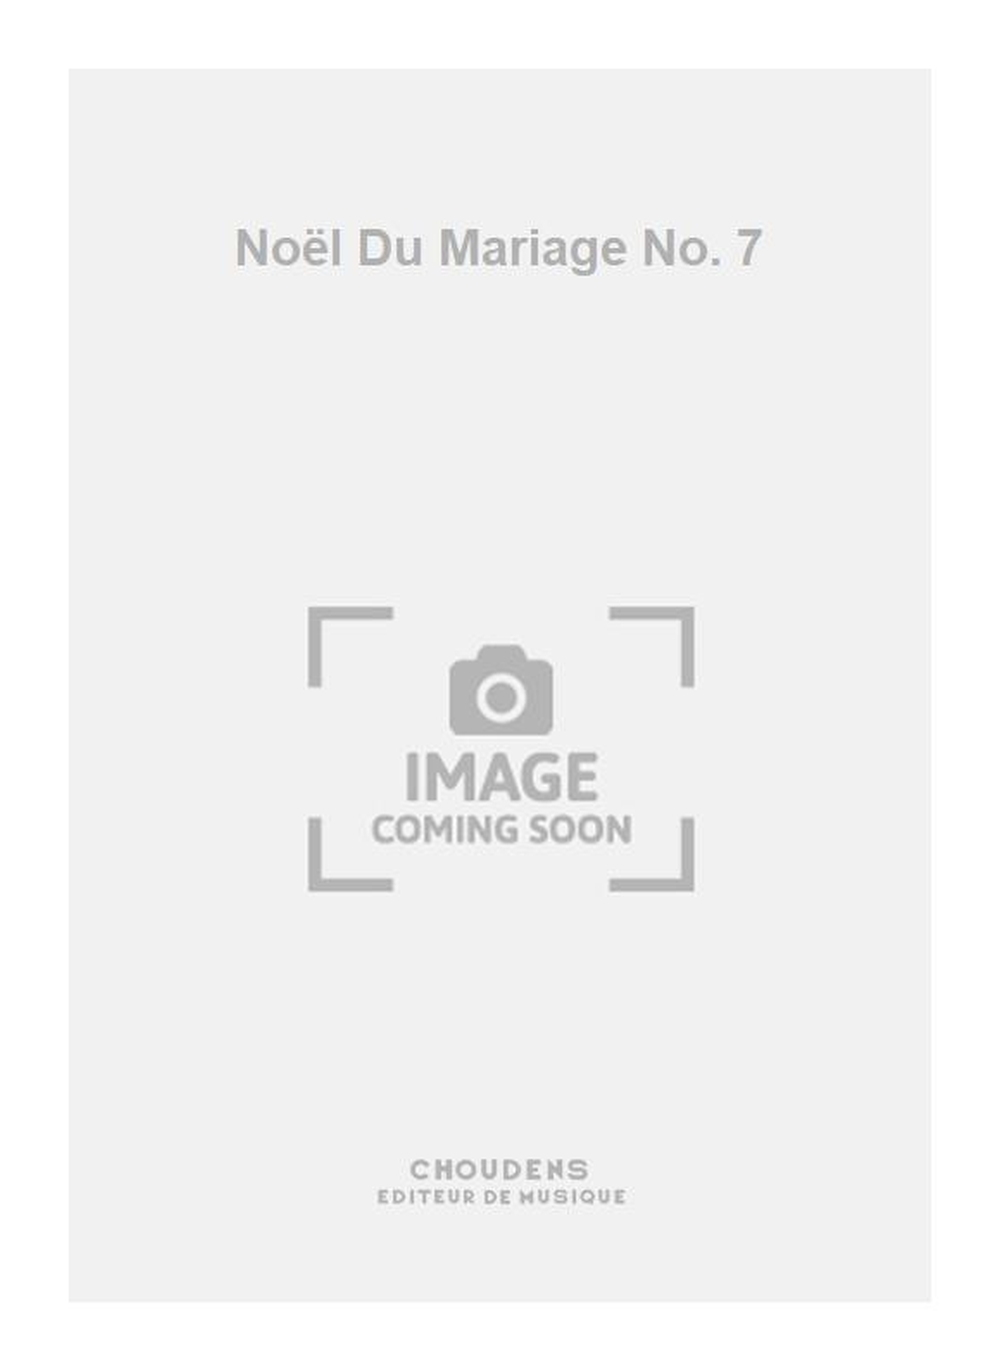 Nol Du Mariage No. 7